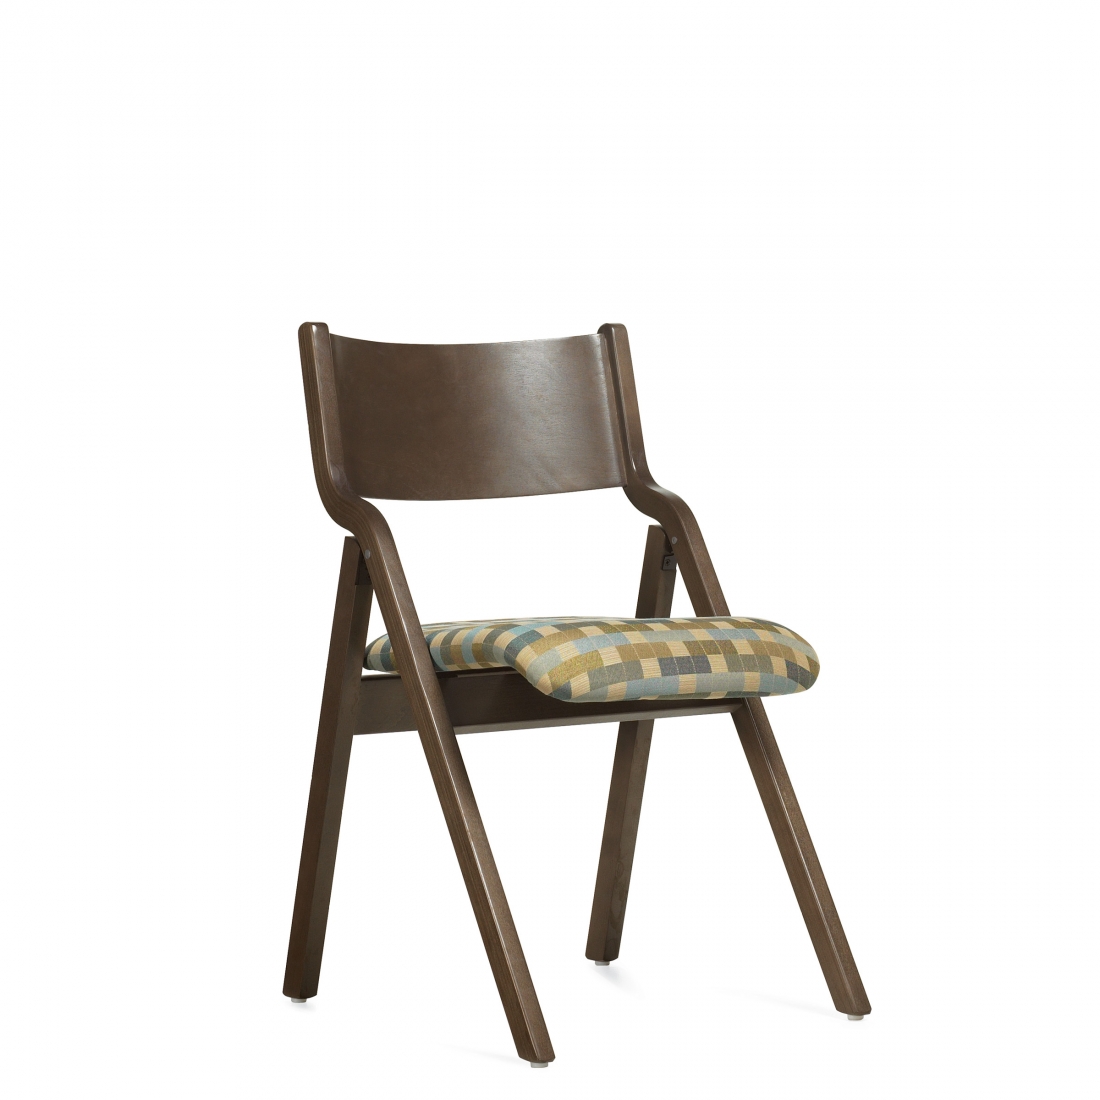 Chaise pliante, assise rembourrée et dossier en bois